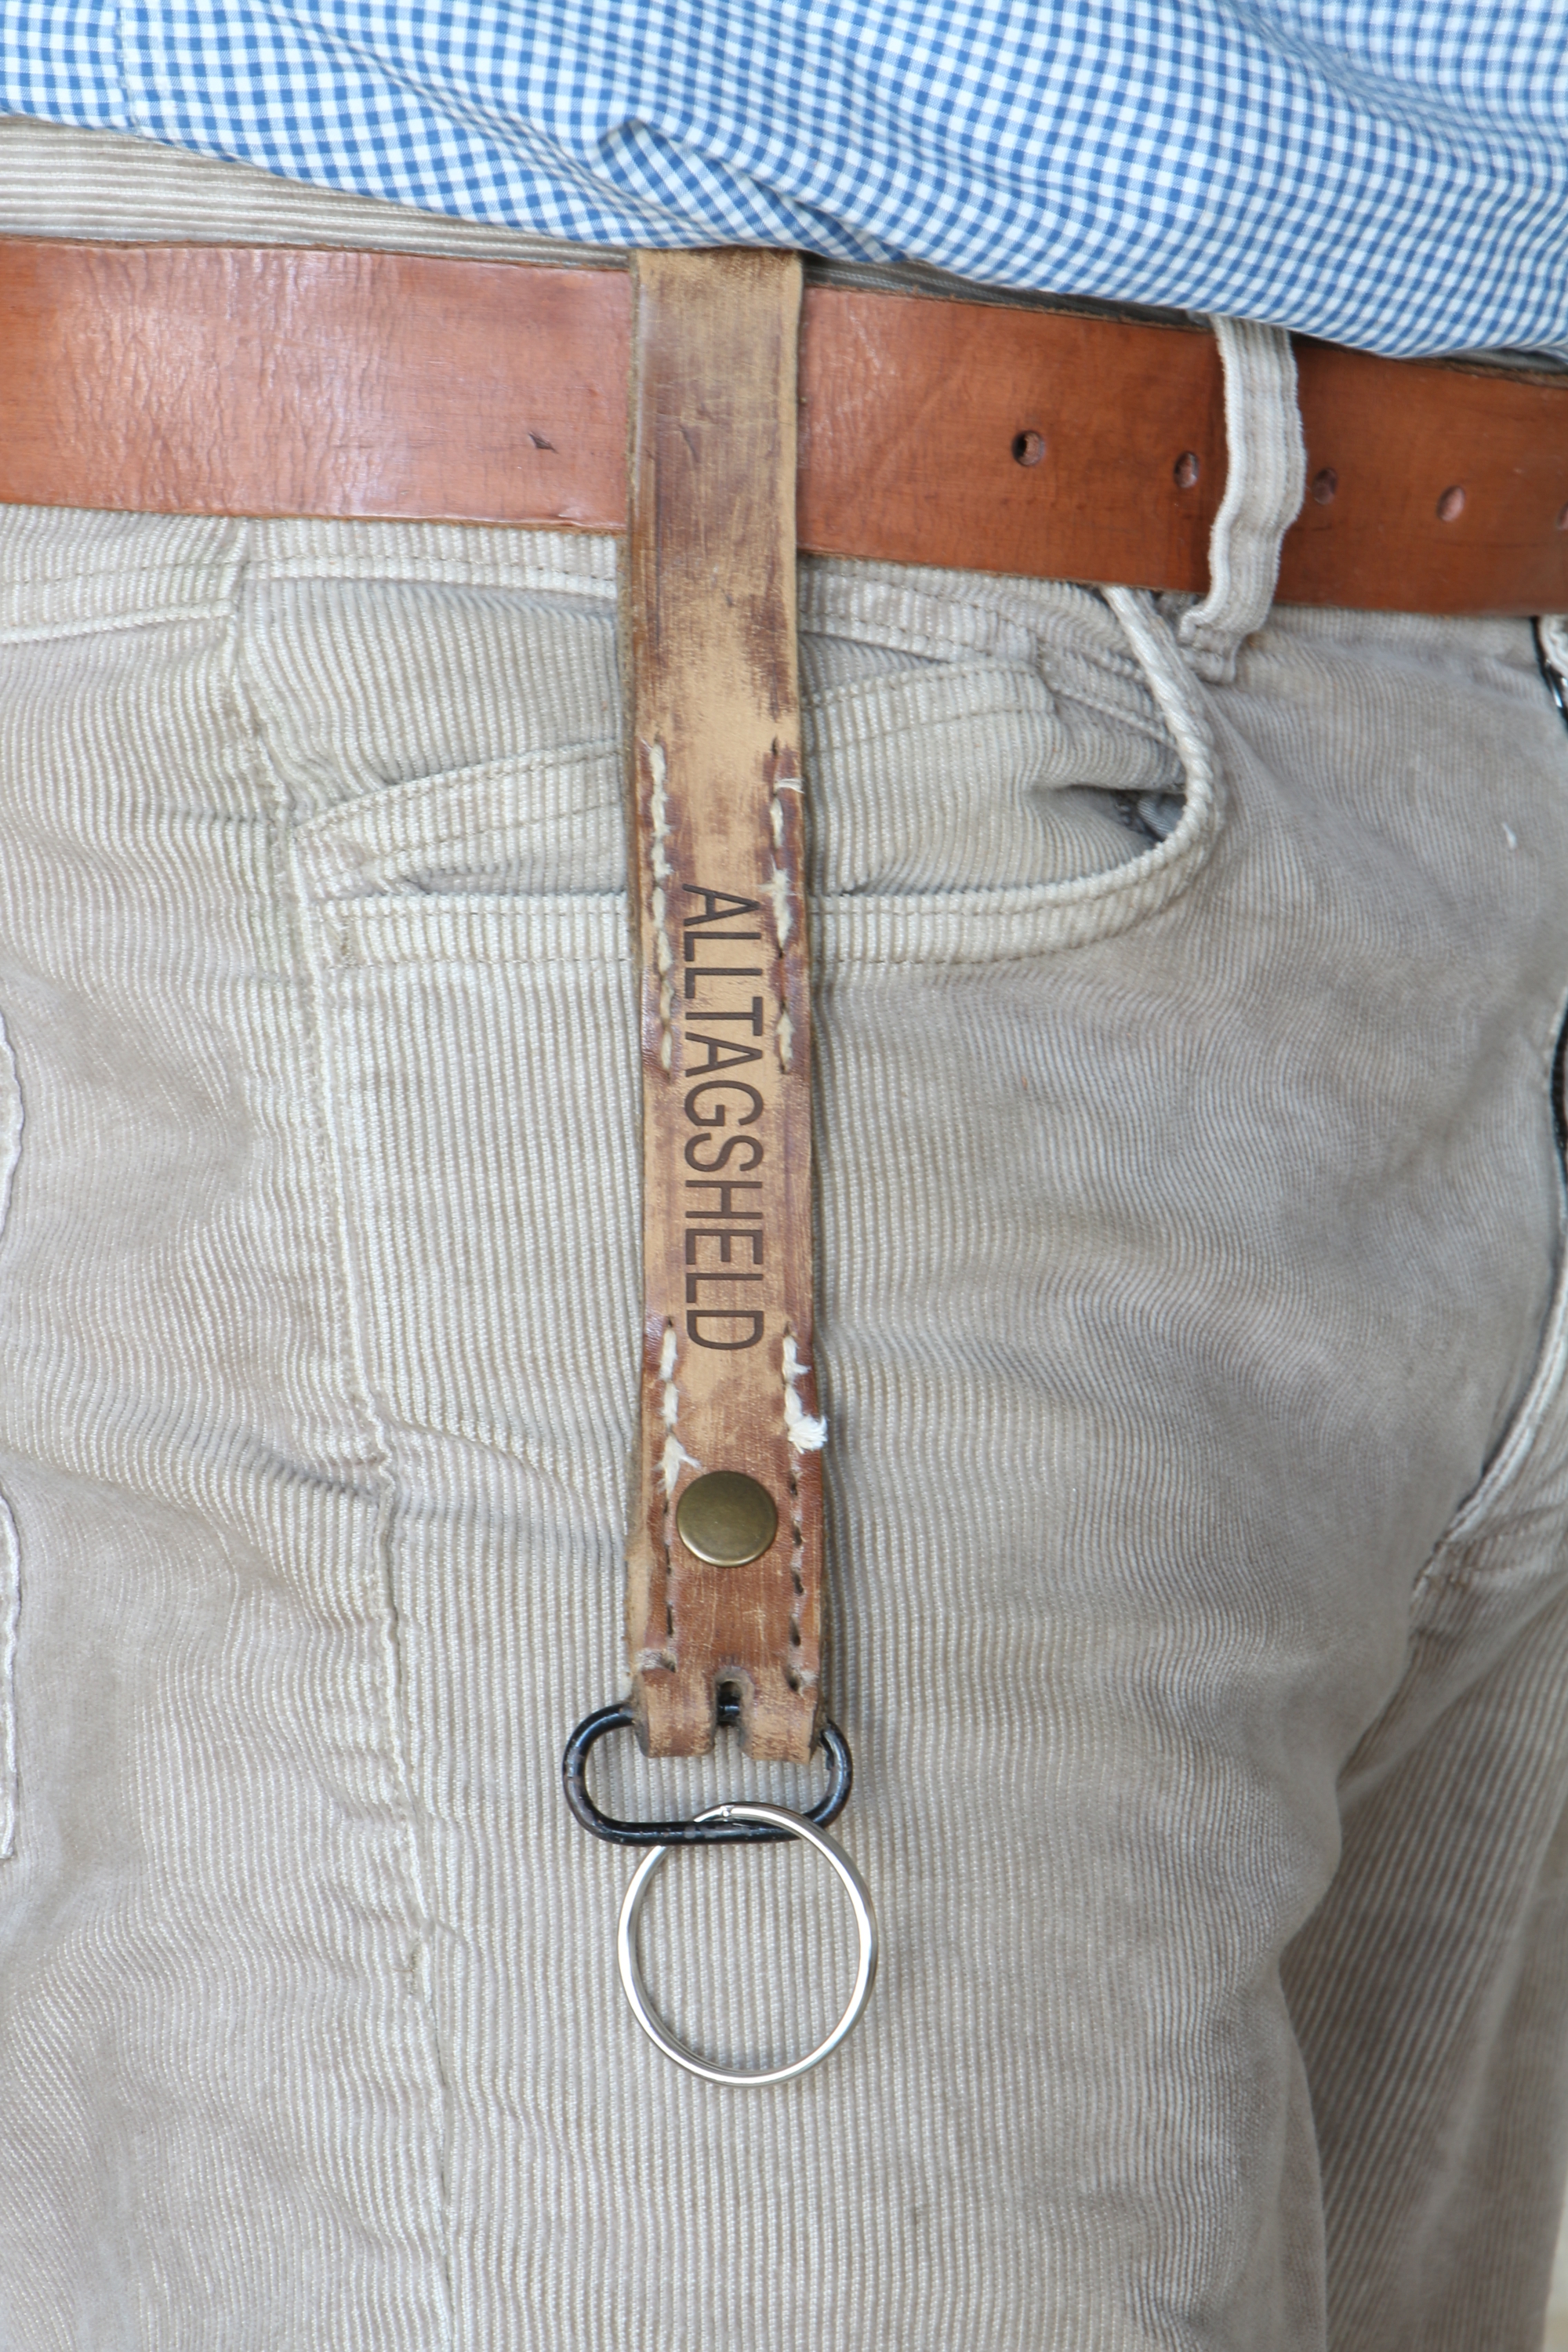 Schlüsselanhänger "Alltagsheld" - Vintage Leder, Schlüsselanhänger mit Gürtelschlaufe,  personalisierter Schlüsselanhänger, upcycling, Schlüsselanhänger altes Leder, 